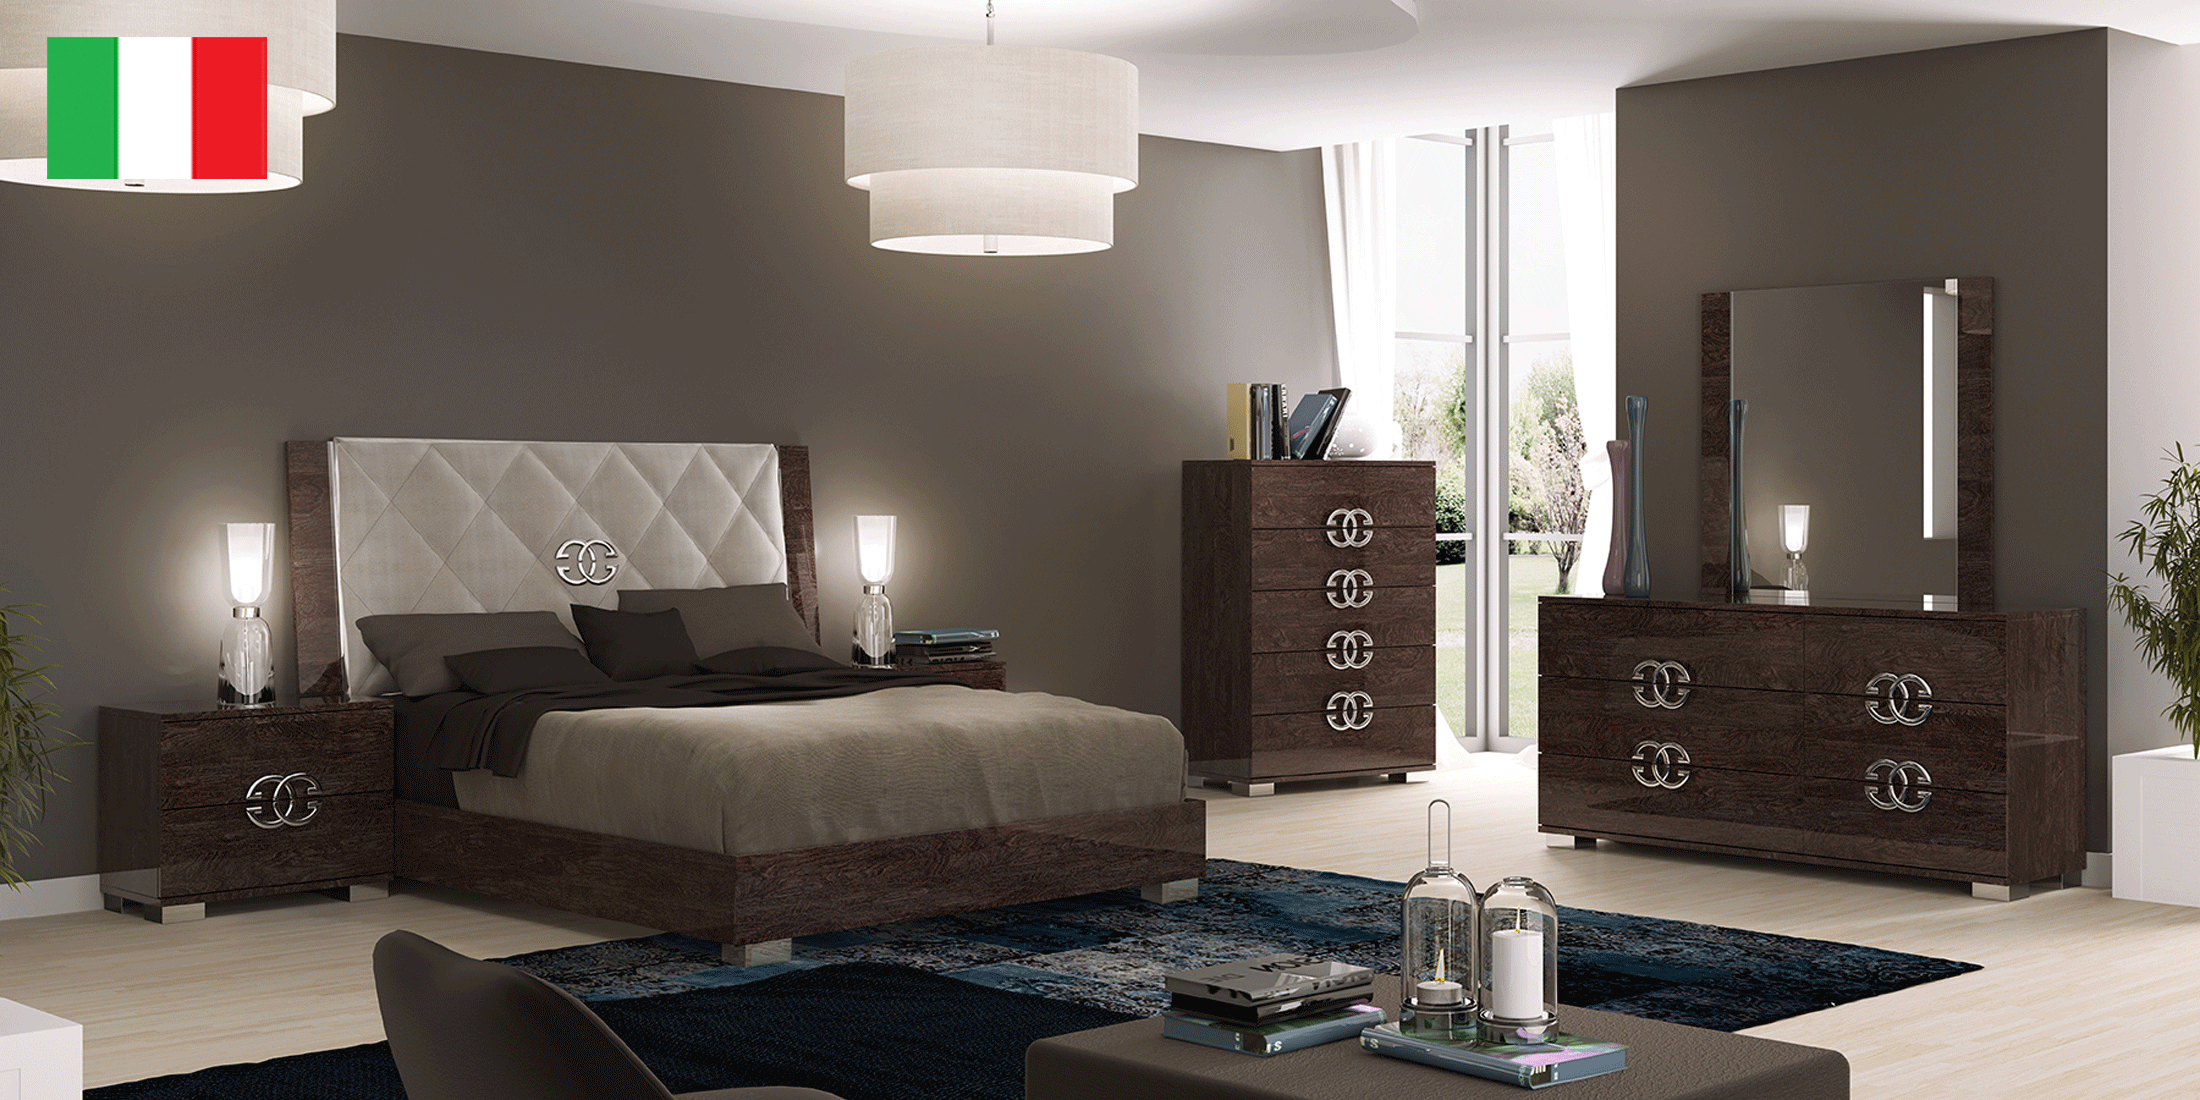 Brands Arredoclassic Living Room, Italy Prestige DELUXE Bedroom